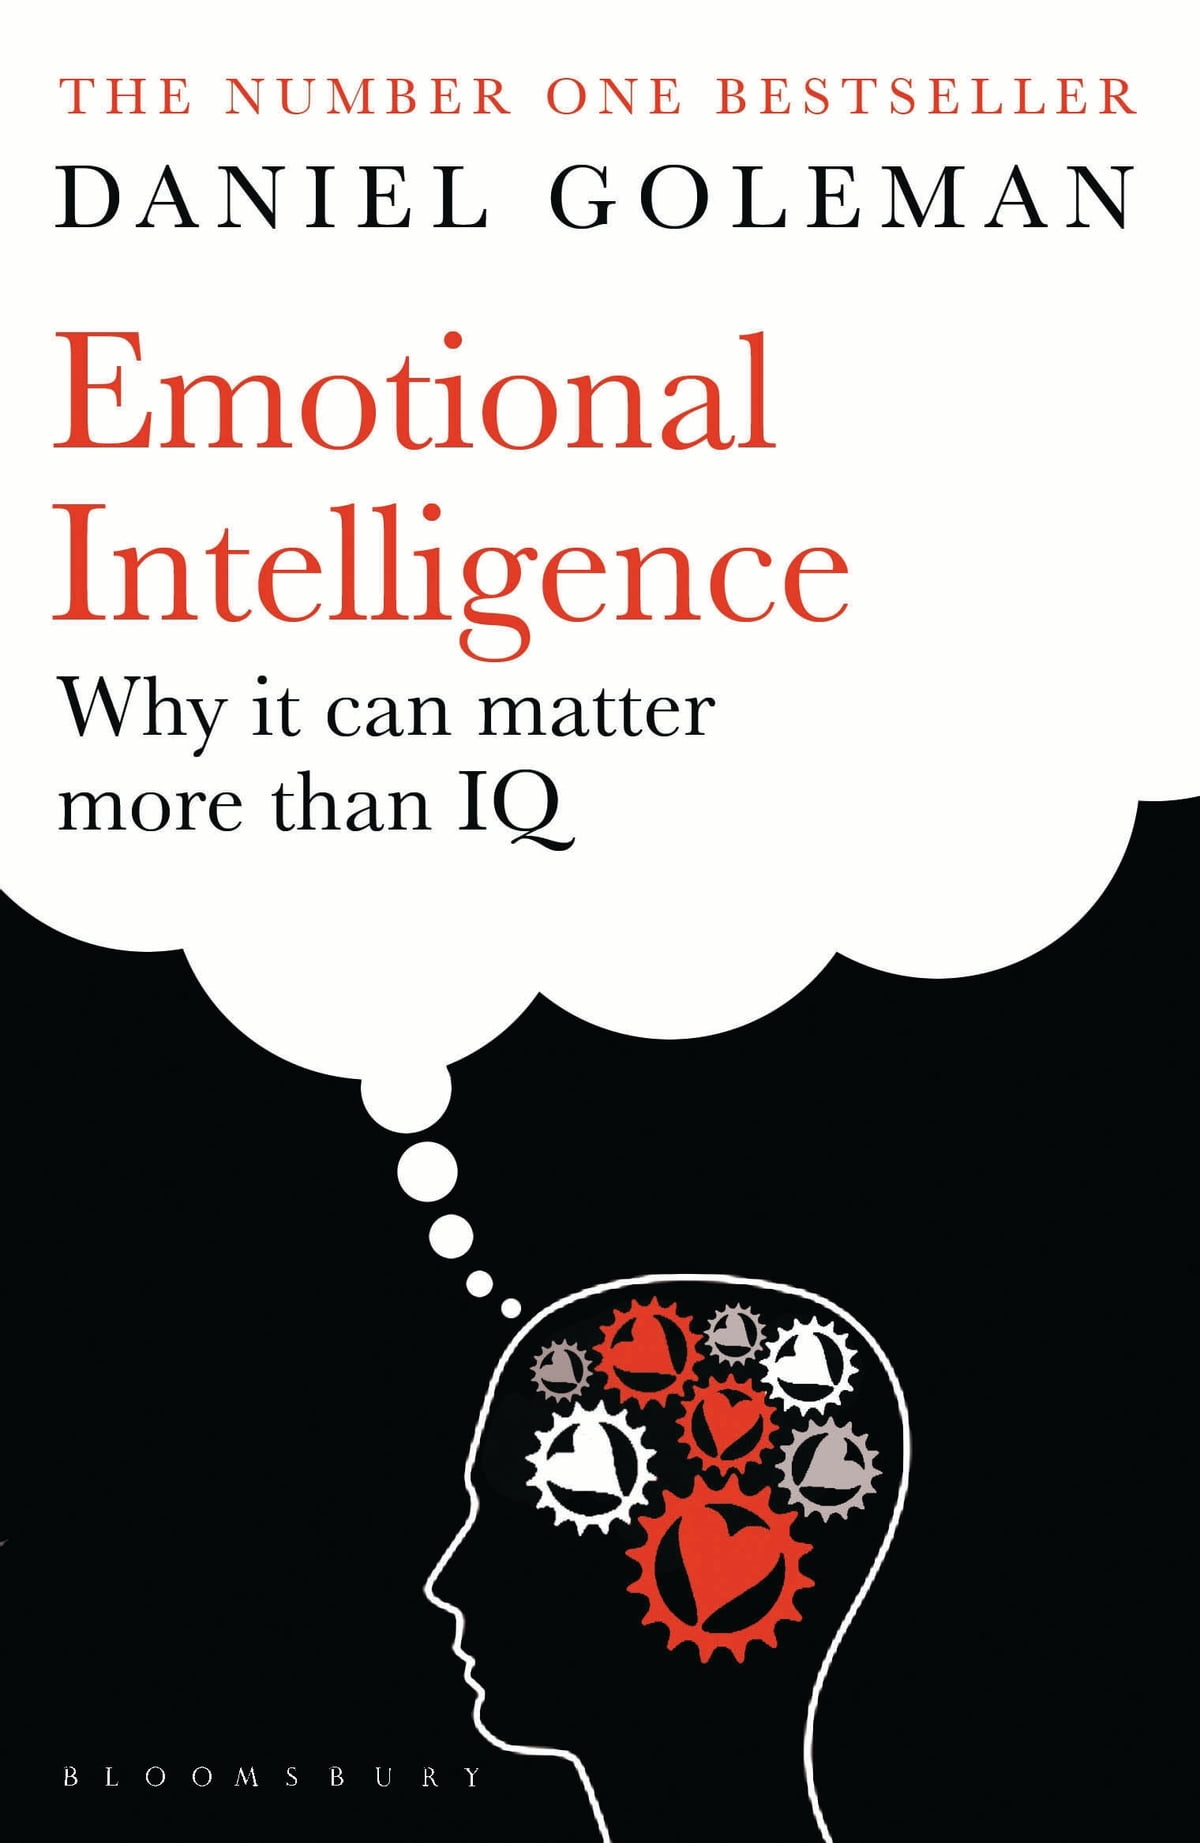 Emotional Intelligence - Daniel Goleman - Pagdandi Bookstore Cafe